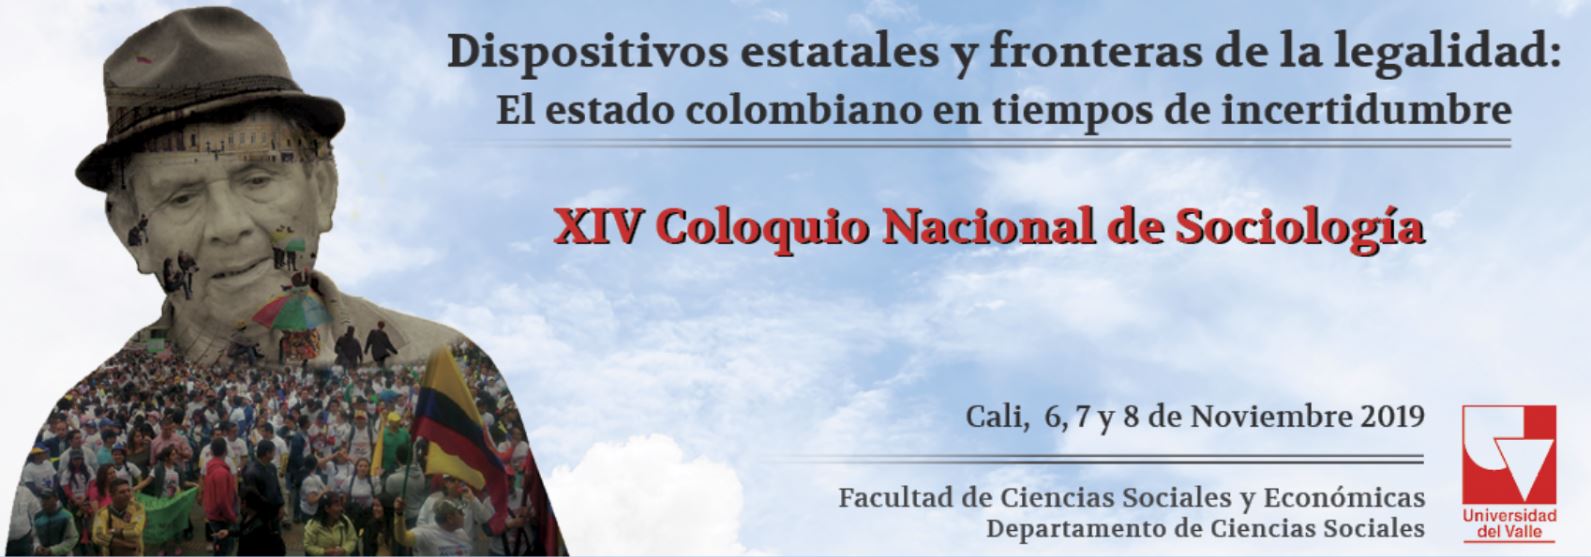 XIV Coloquio Nacional de Sociología en Cali, Valle del Cauca